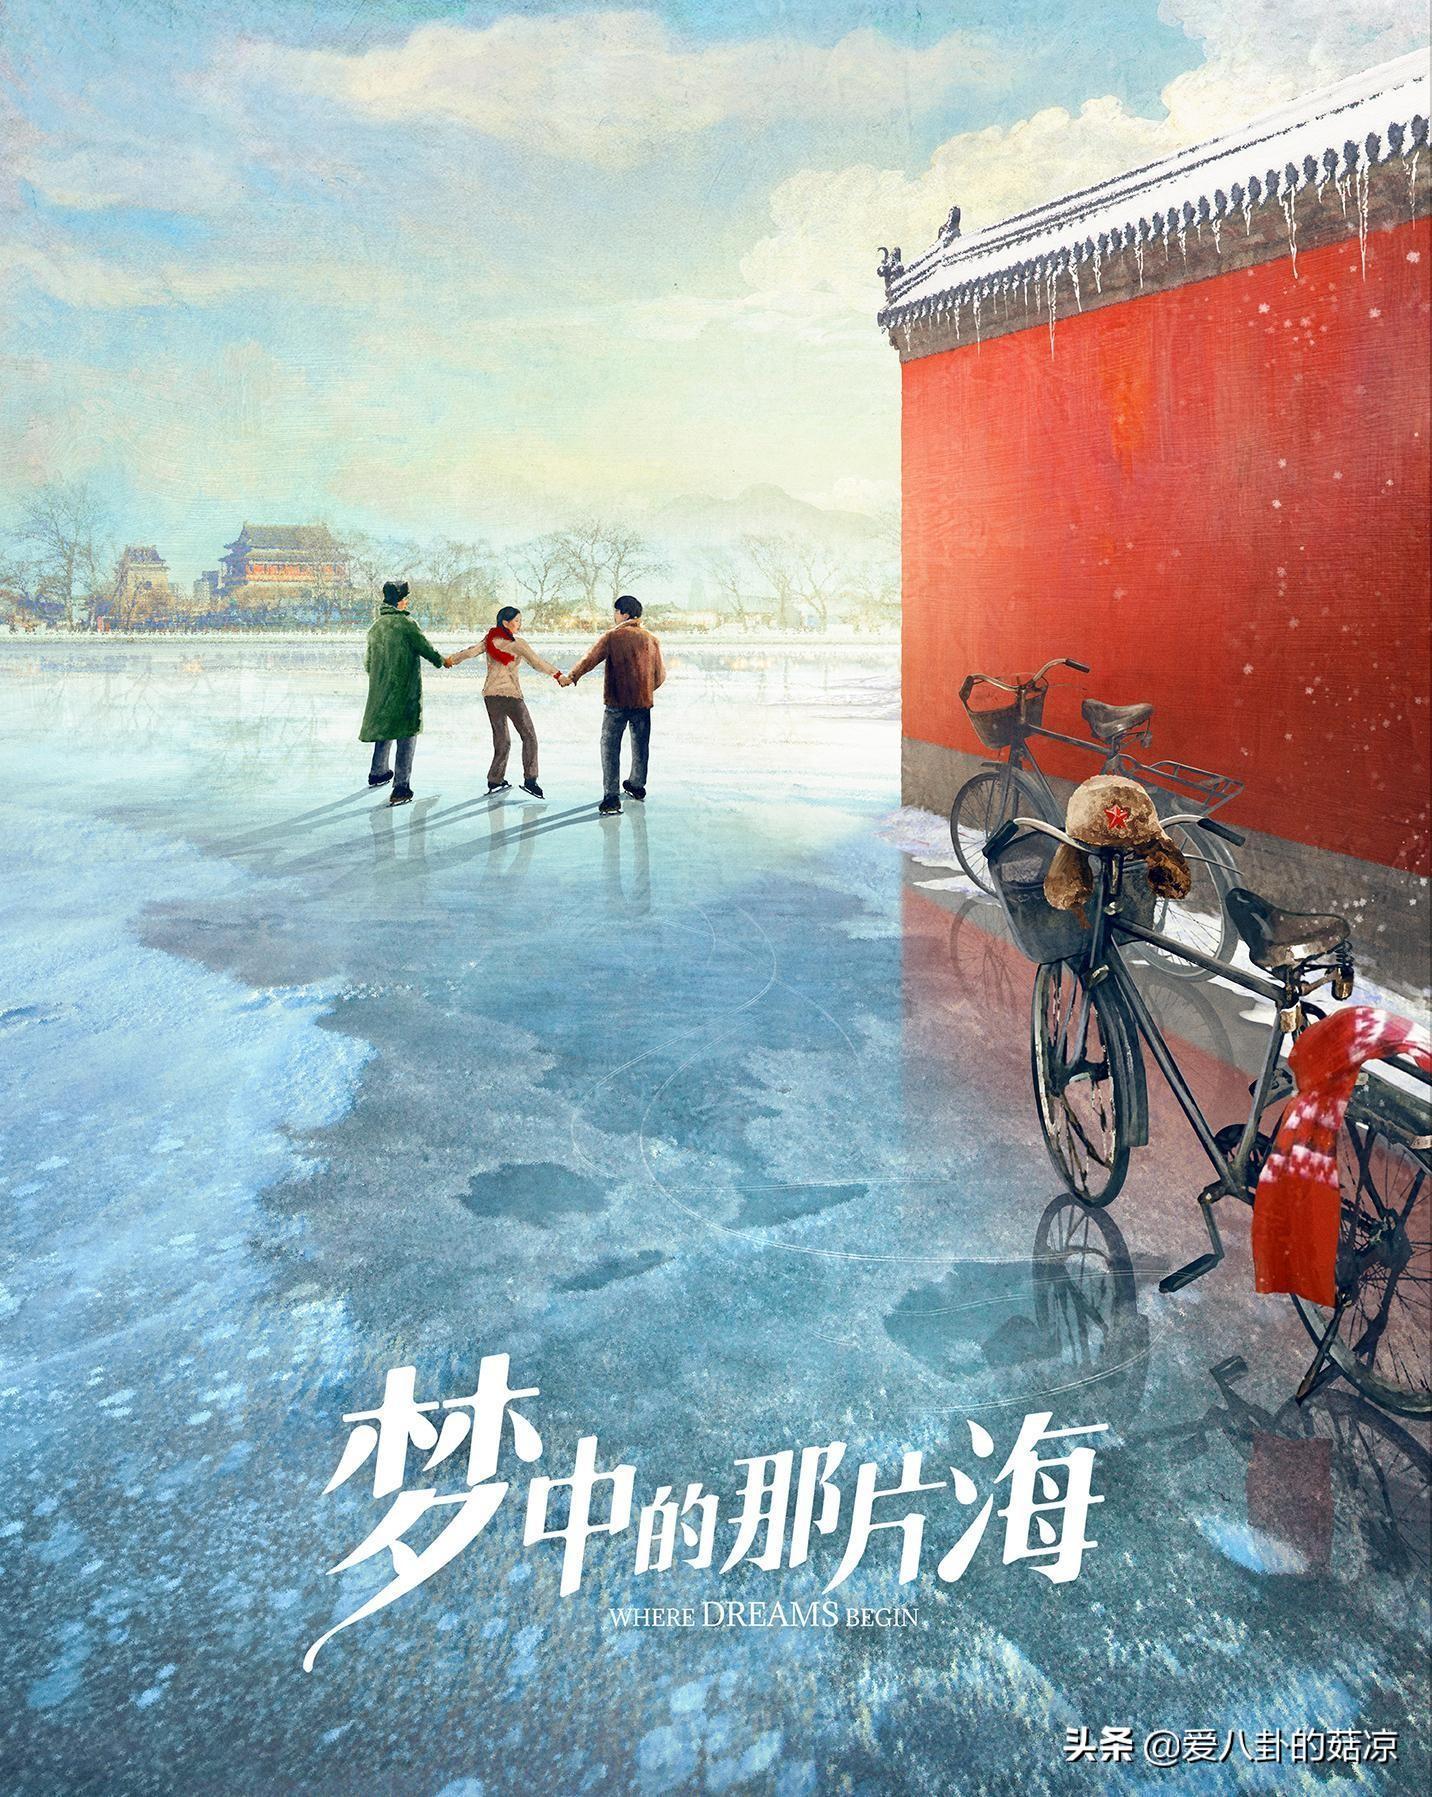 年代剧《梦中的那片海》：肖战、李沁、刘芮麟主演，阵容强大